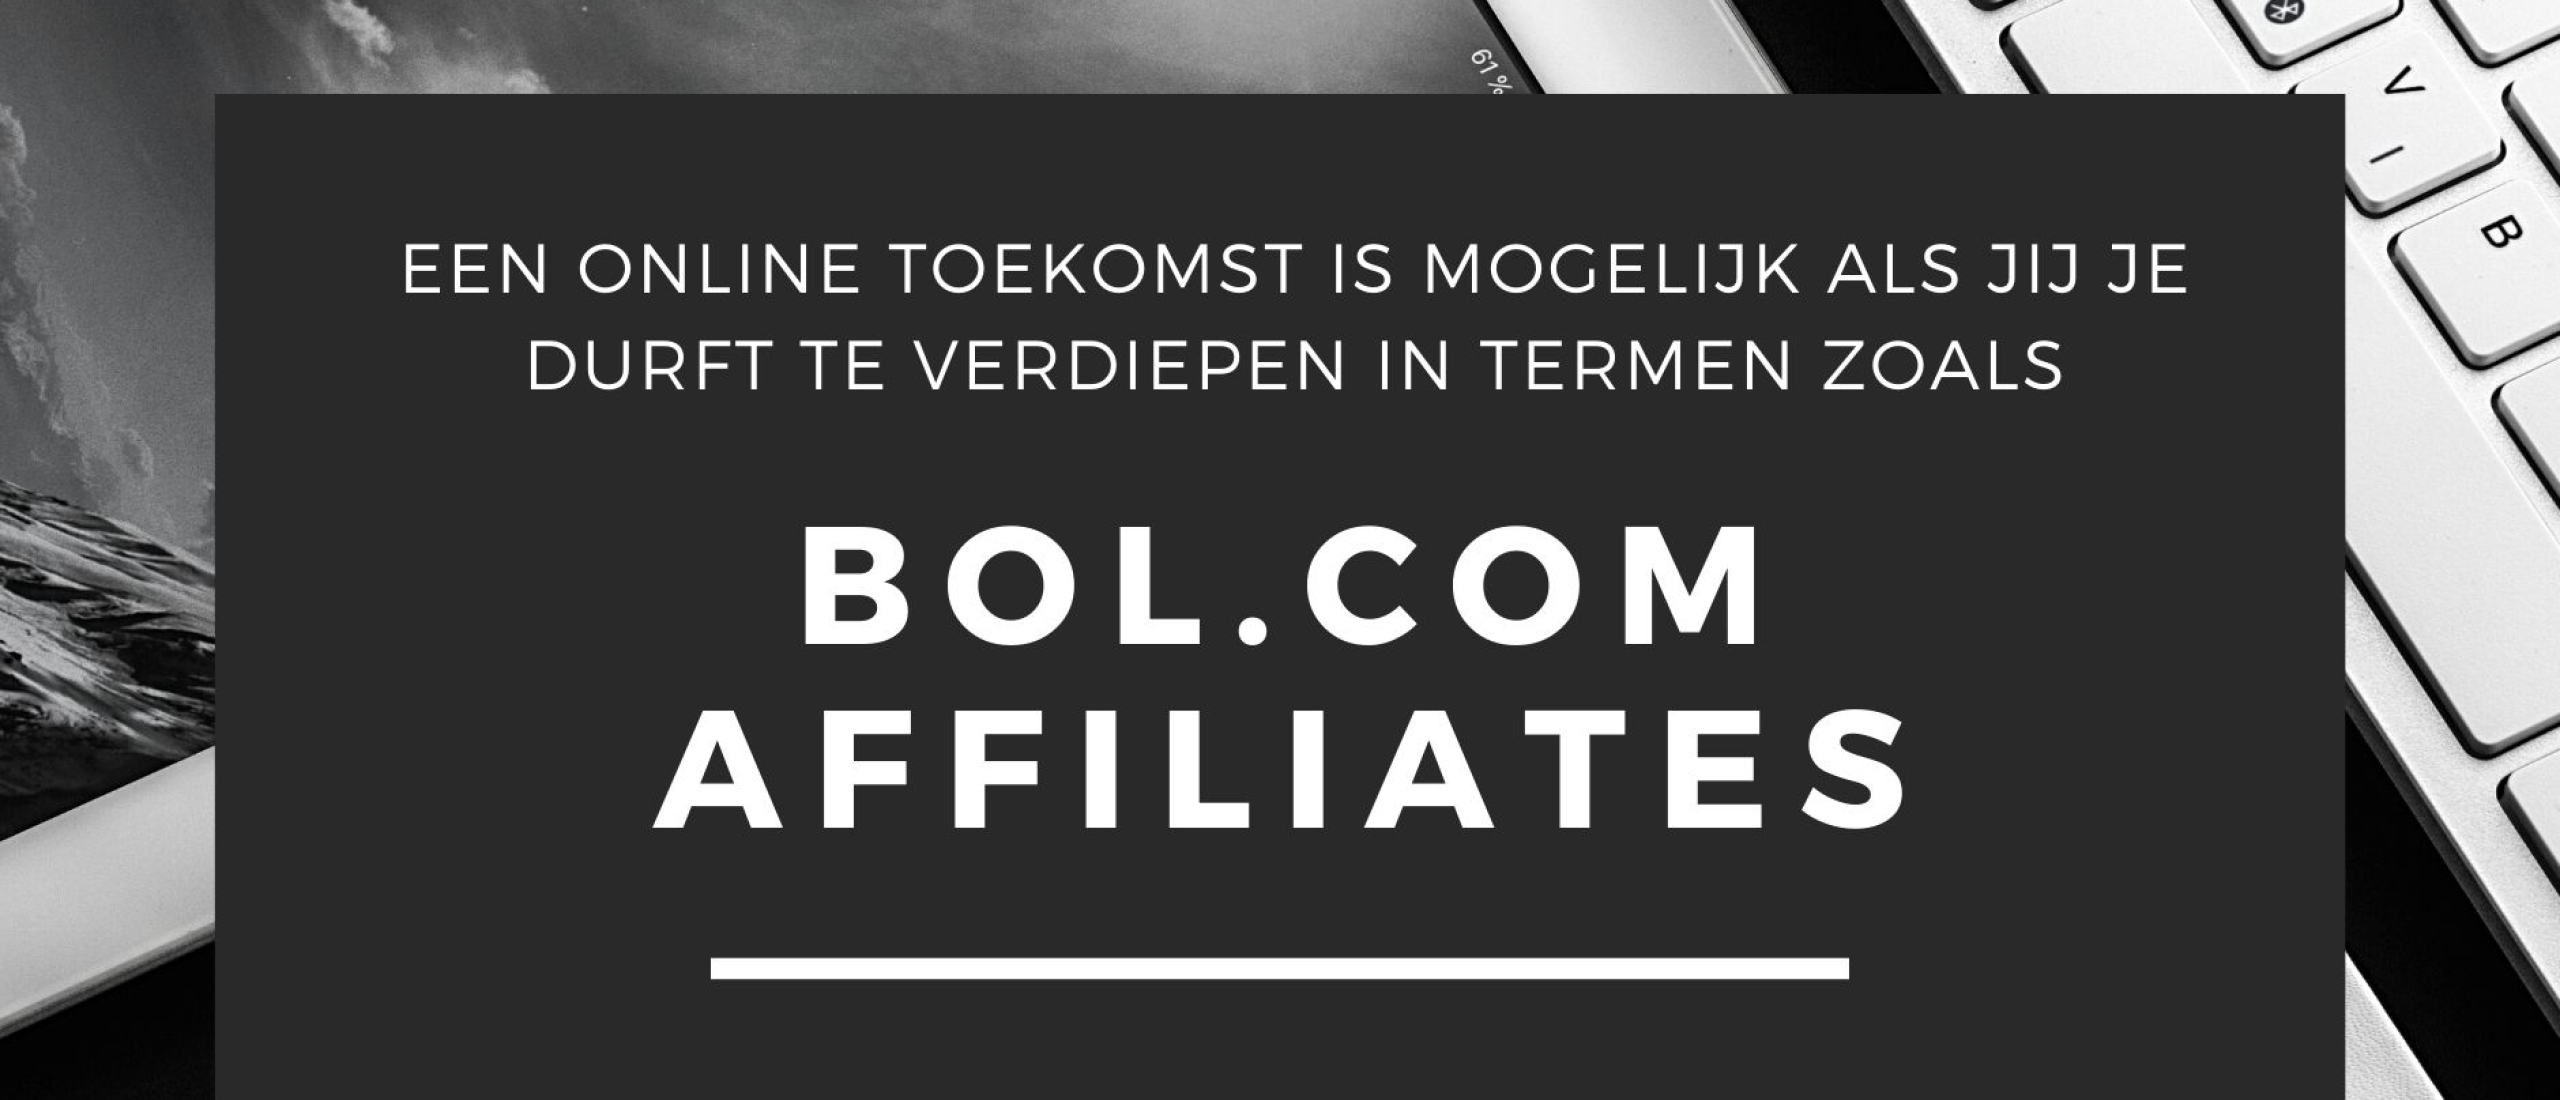 bol.com affiliate programma